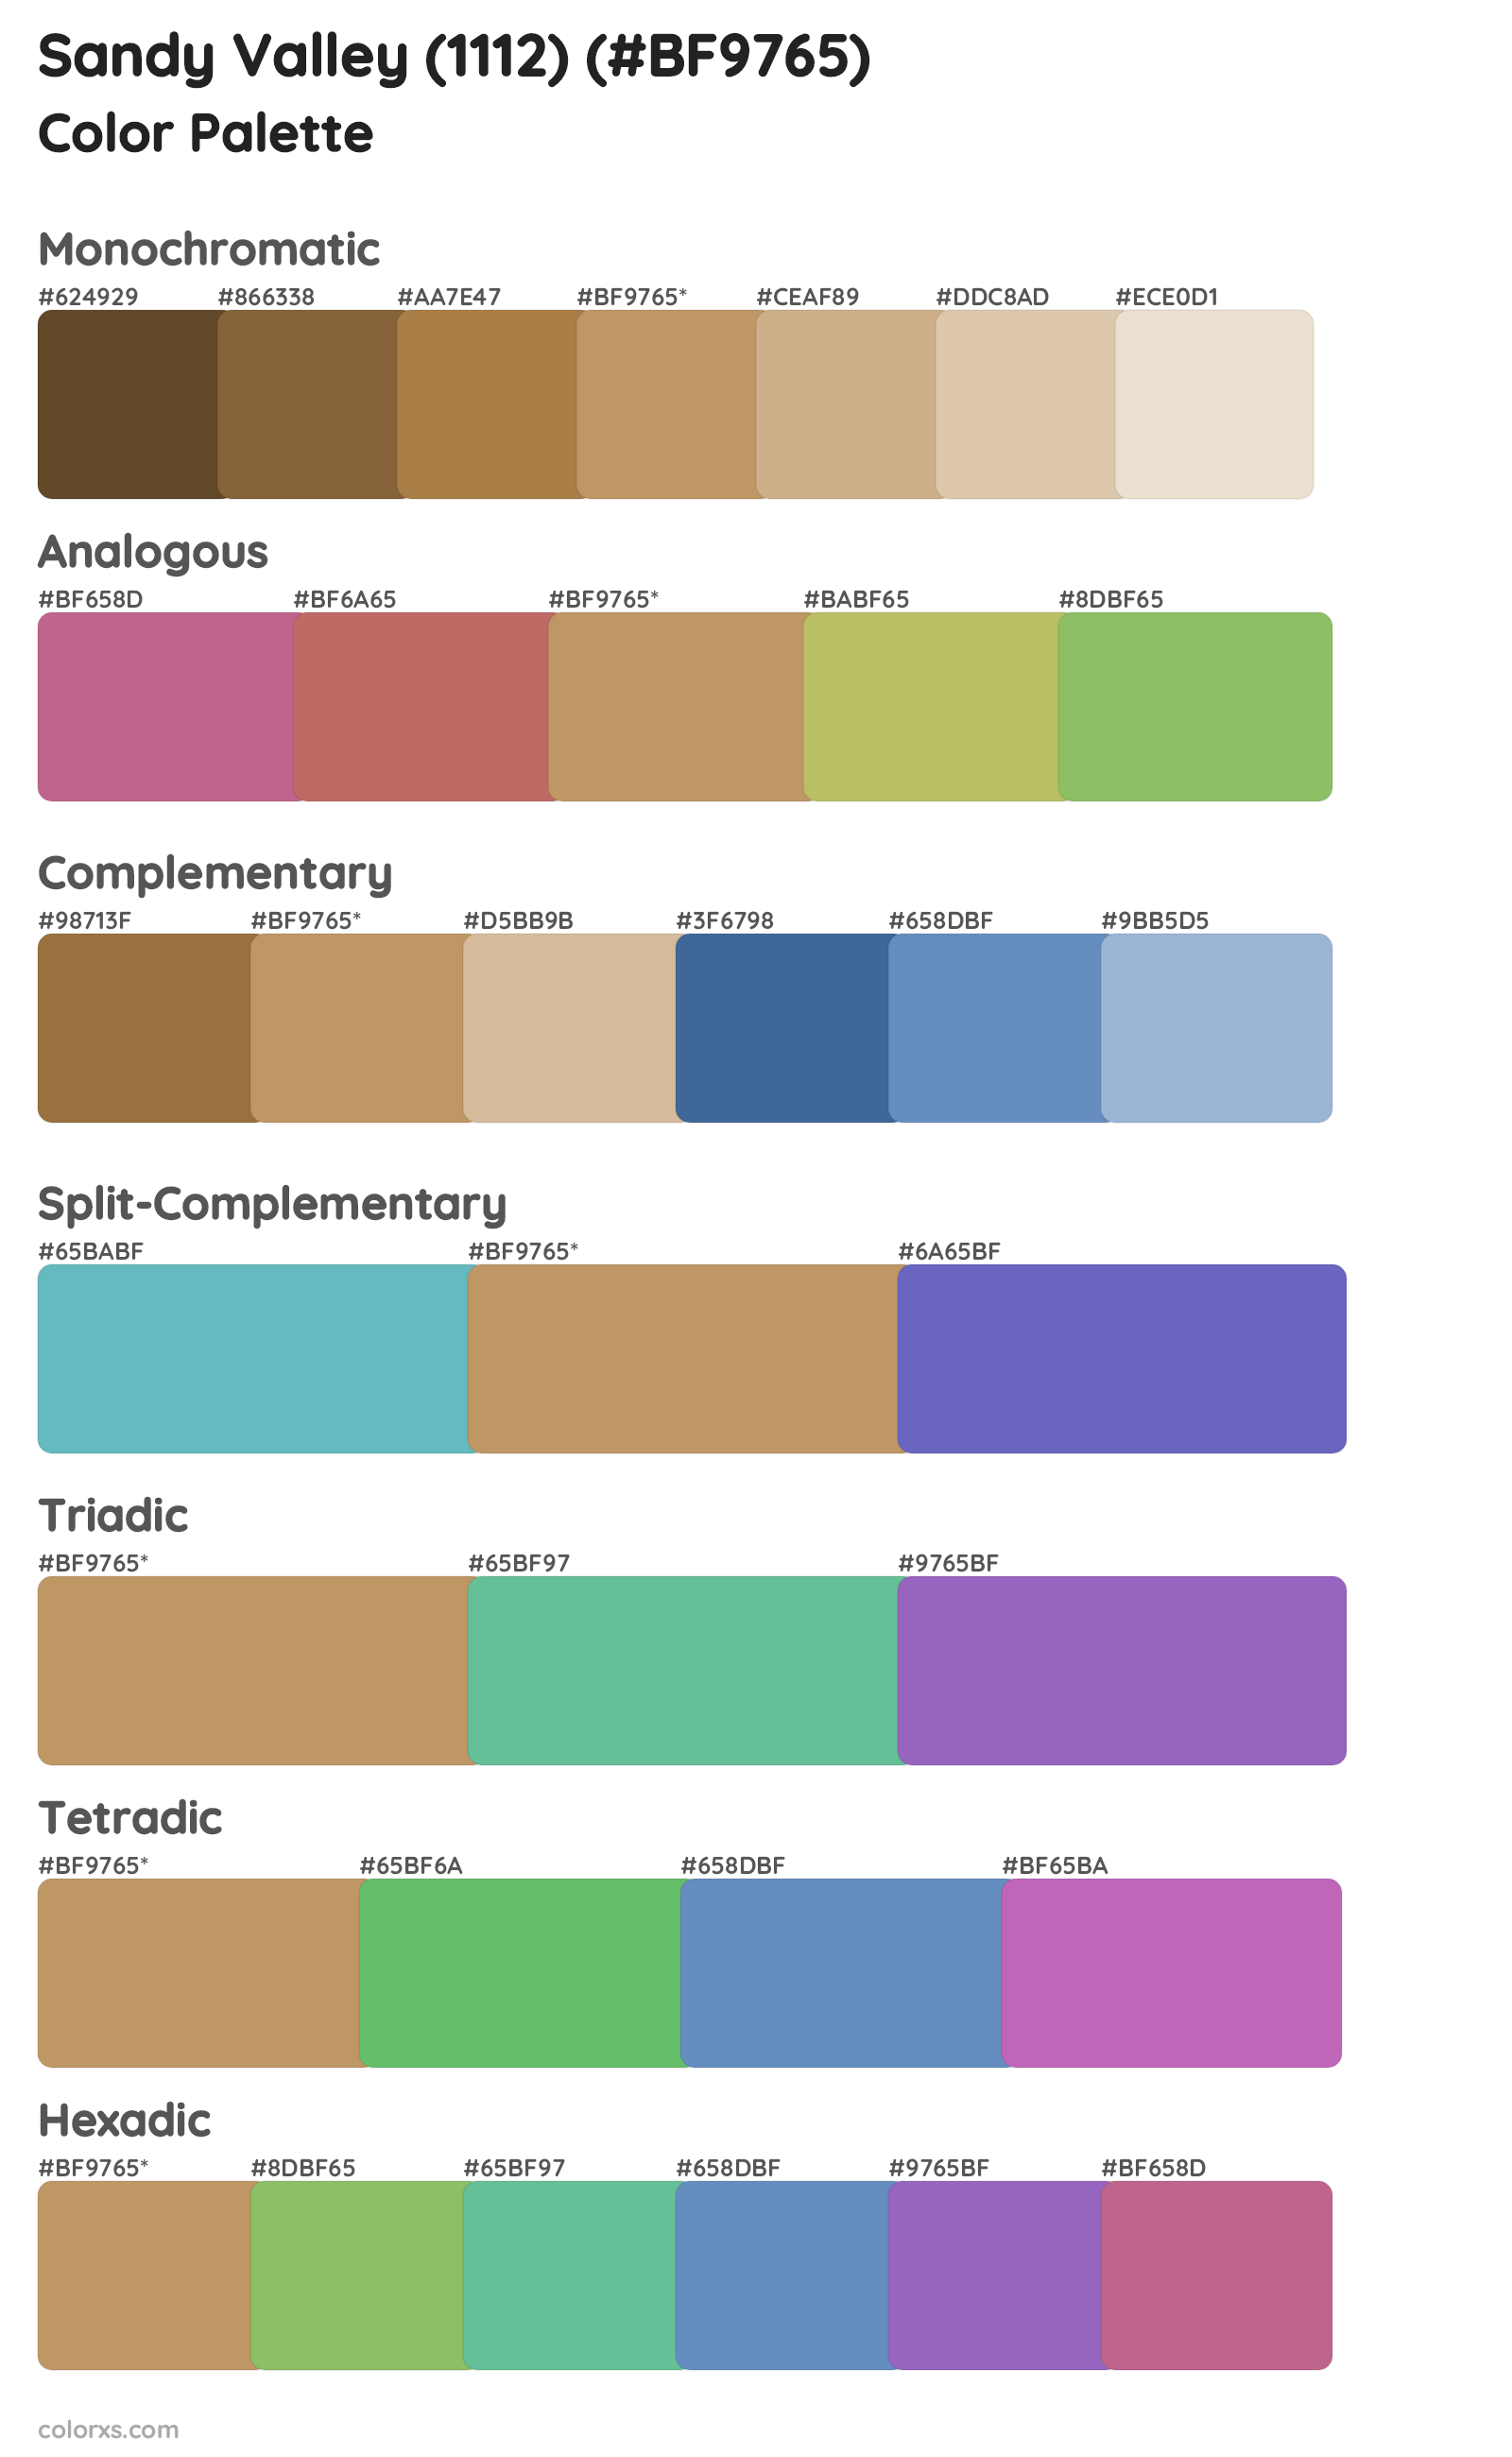 Sandy Valley (1112) Color Scheme Palettes